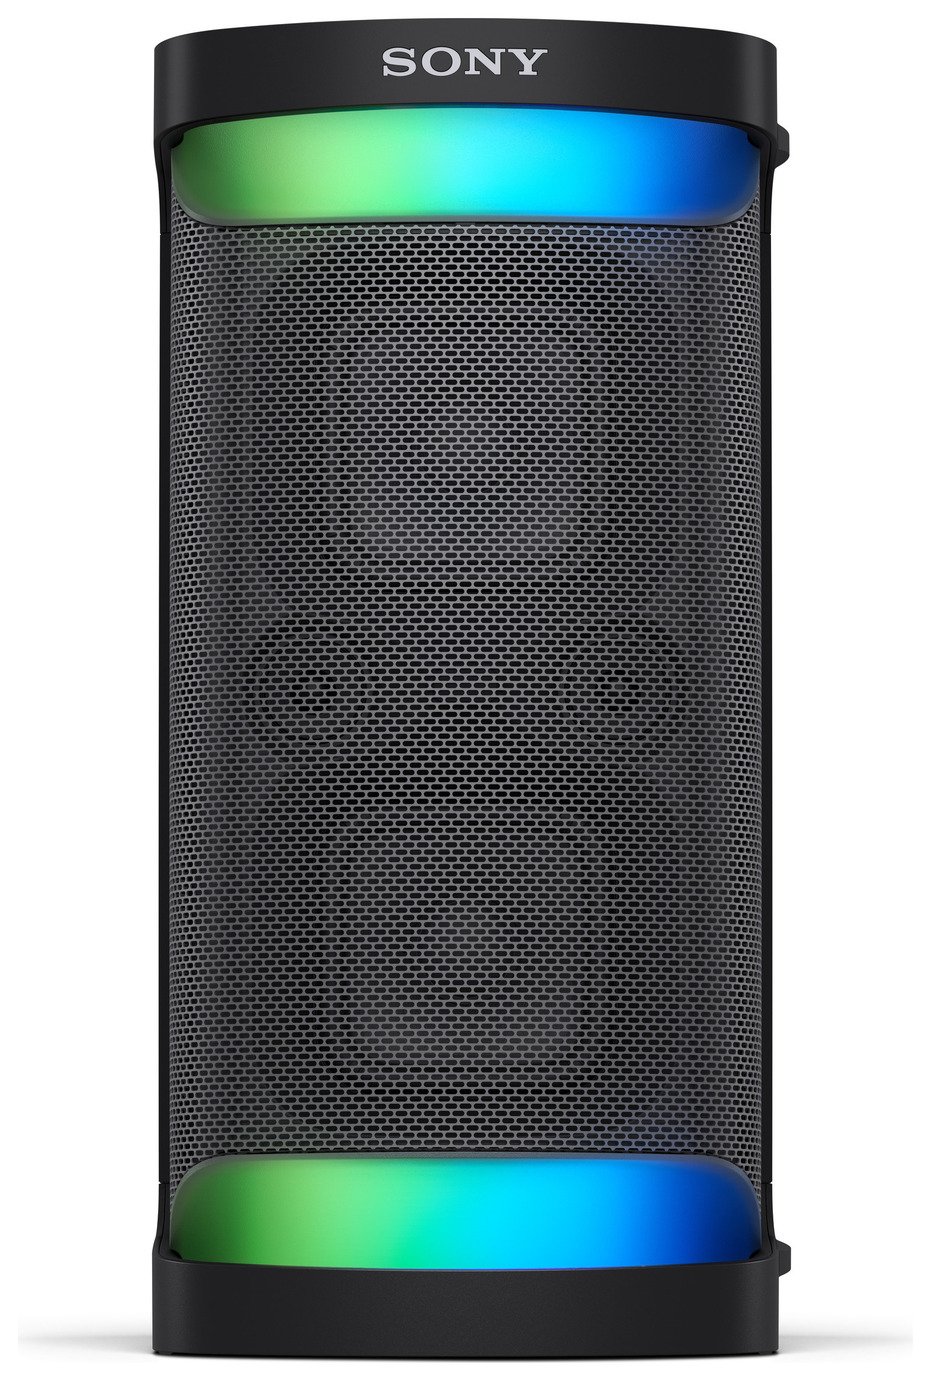 Sony SRSXP500 Bluetooth Party Speaker